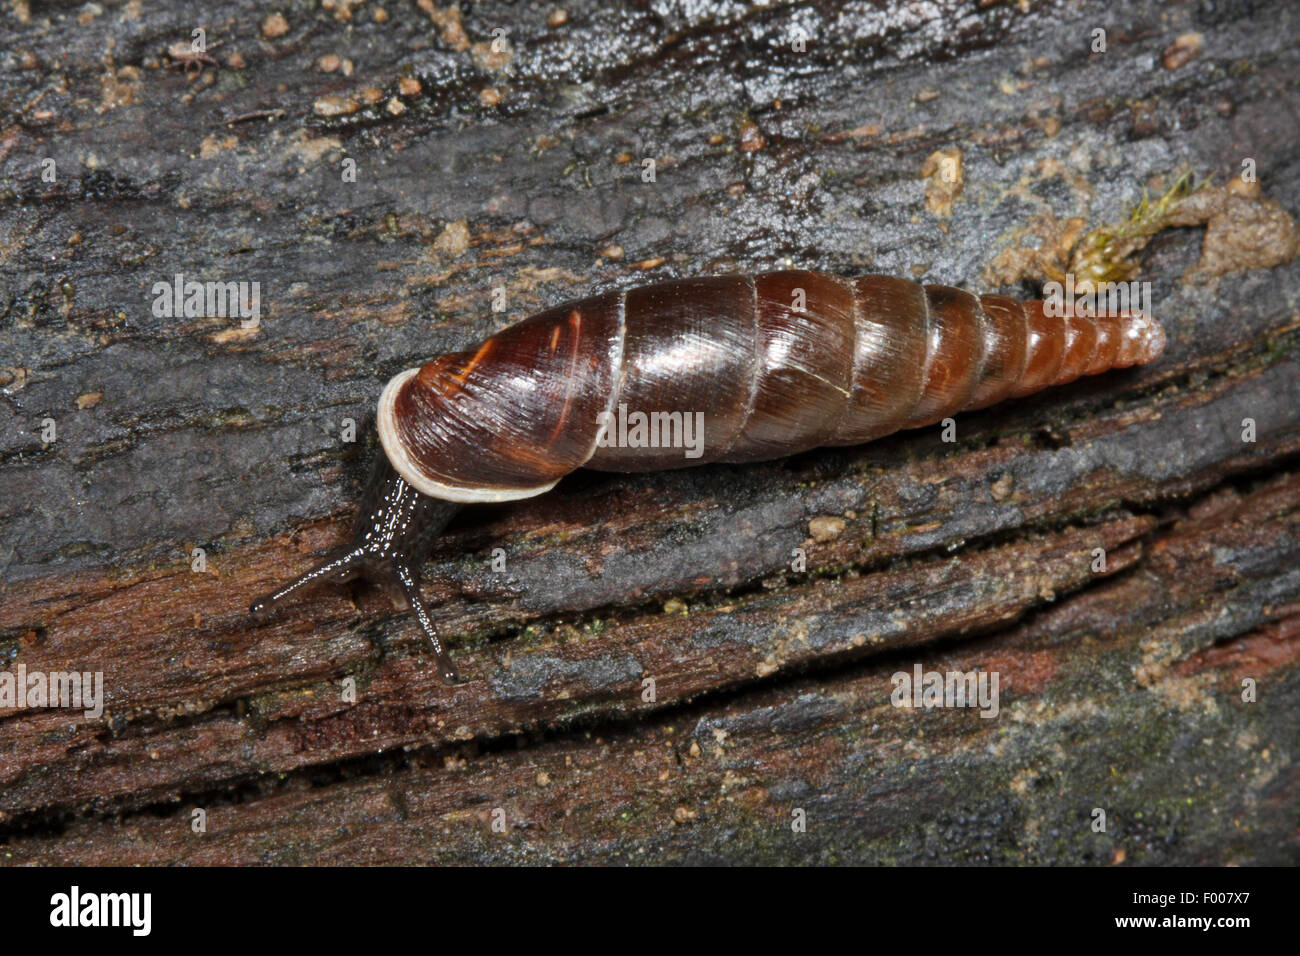 plaited door snail (Cochlodina laminata), creeping on wood, Germany Stock Photo